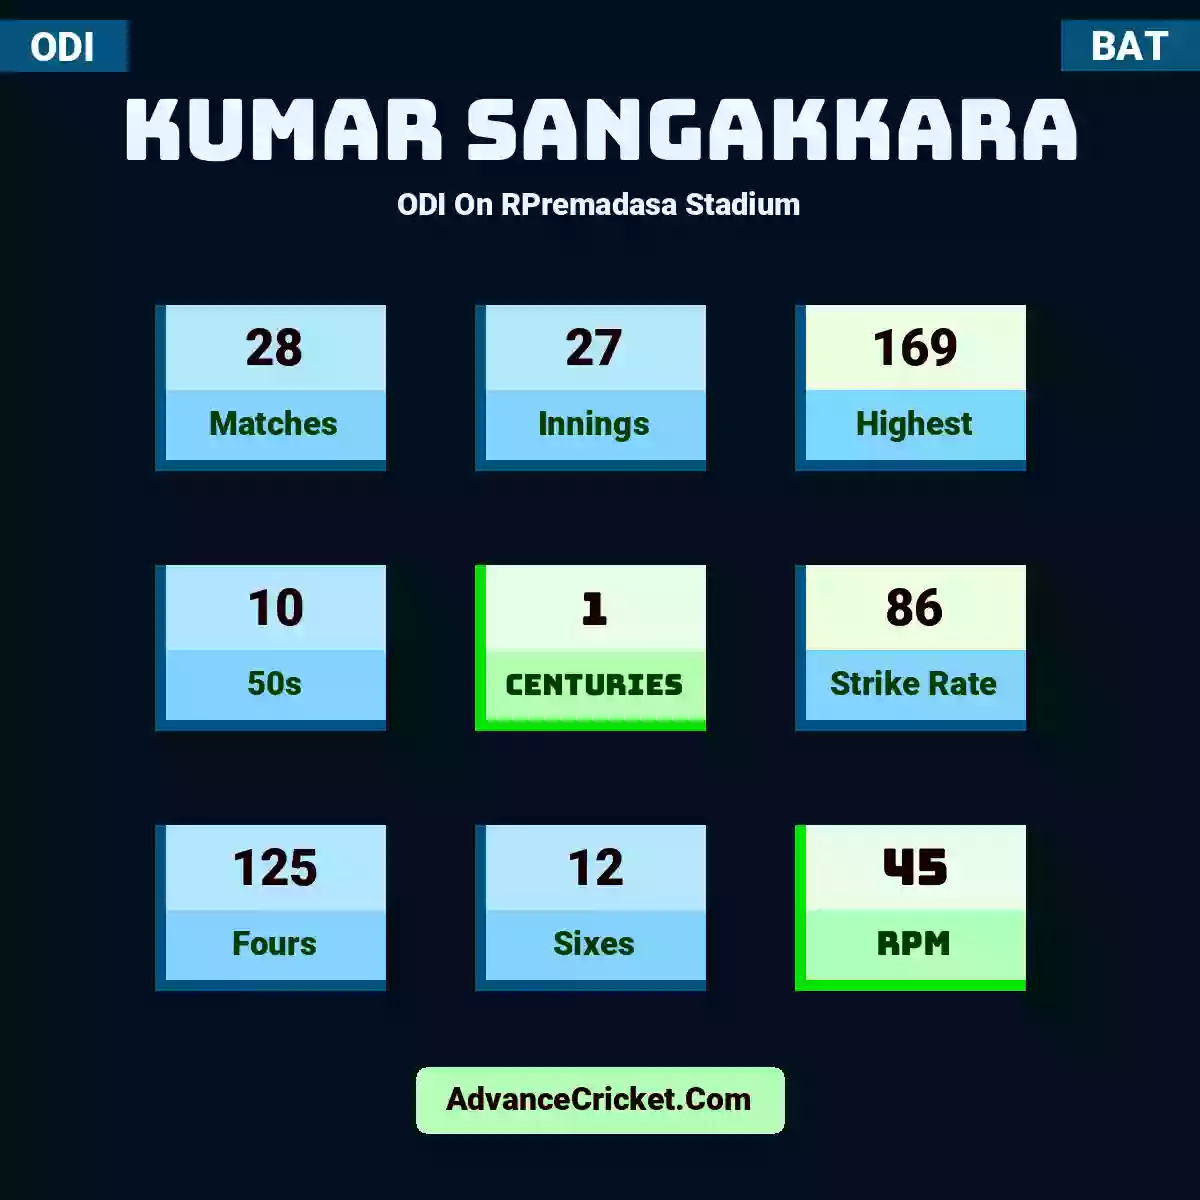 Kumar Sangakkara ODI  On RPremadasa Stadium, Kumar Sangakkara played 28 matches, scored 169 runs as highest, 10 half-centuries, and 1 centuries, with a strike rate of 86. K.Sangakkara hit 125 fours and 12 sixes, with an RPM of 45.